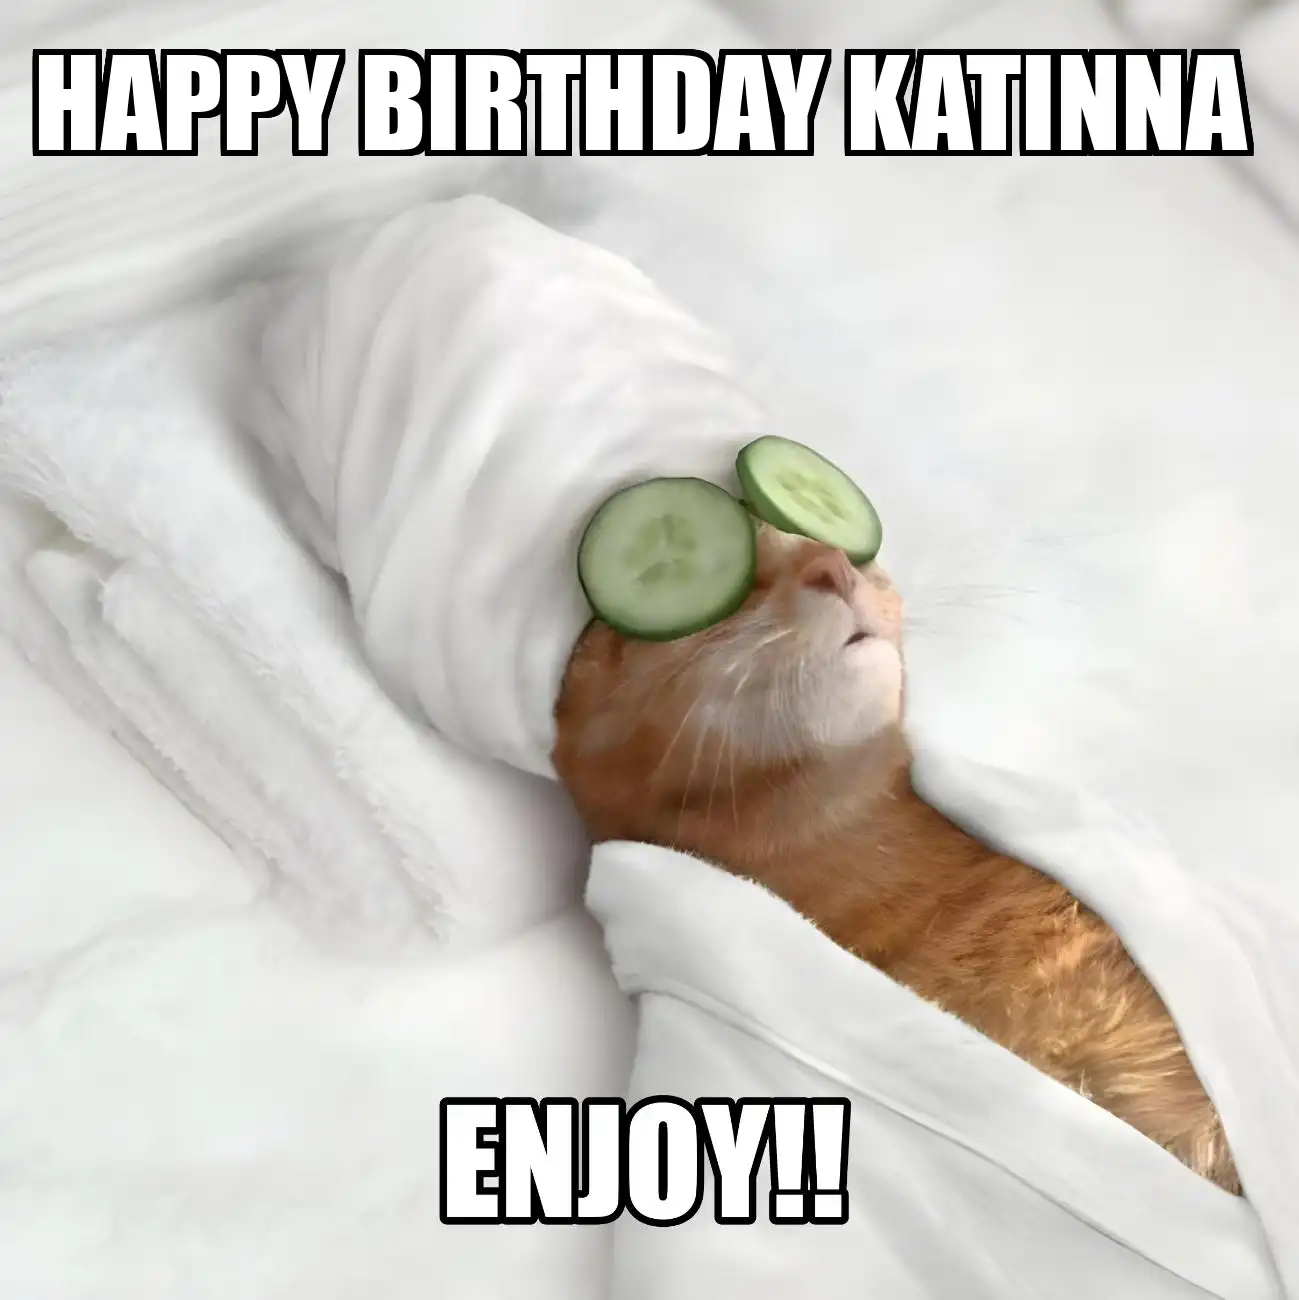 Happy Birthday Katinna Enjoy Cat Meme